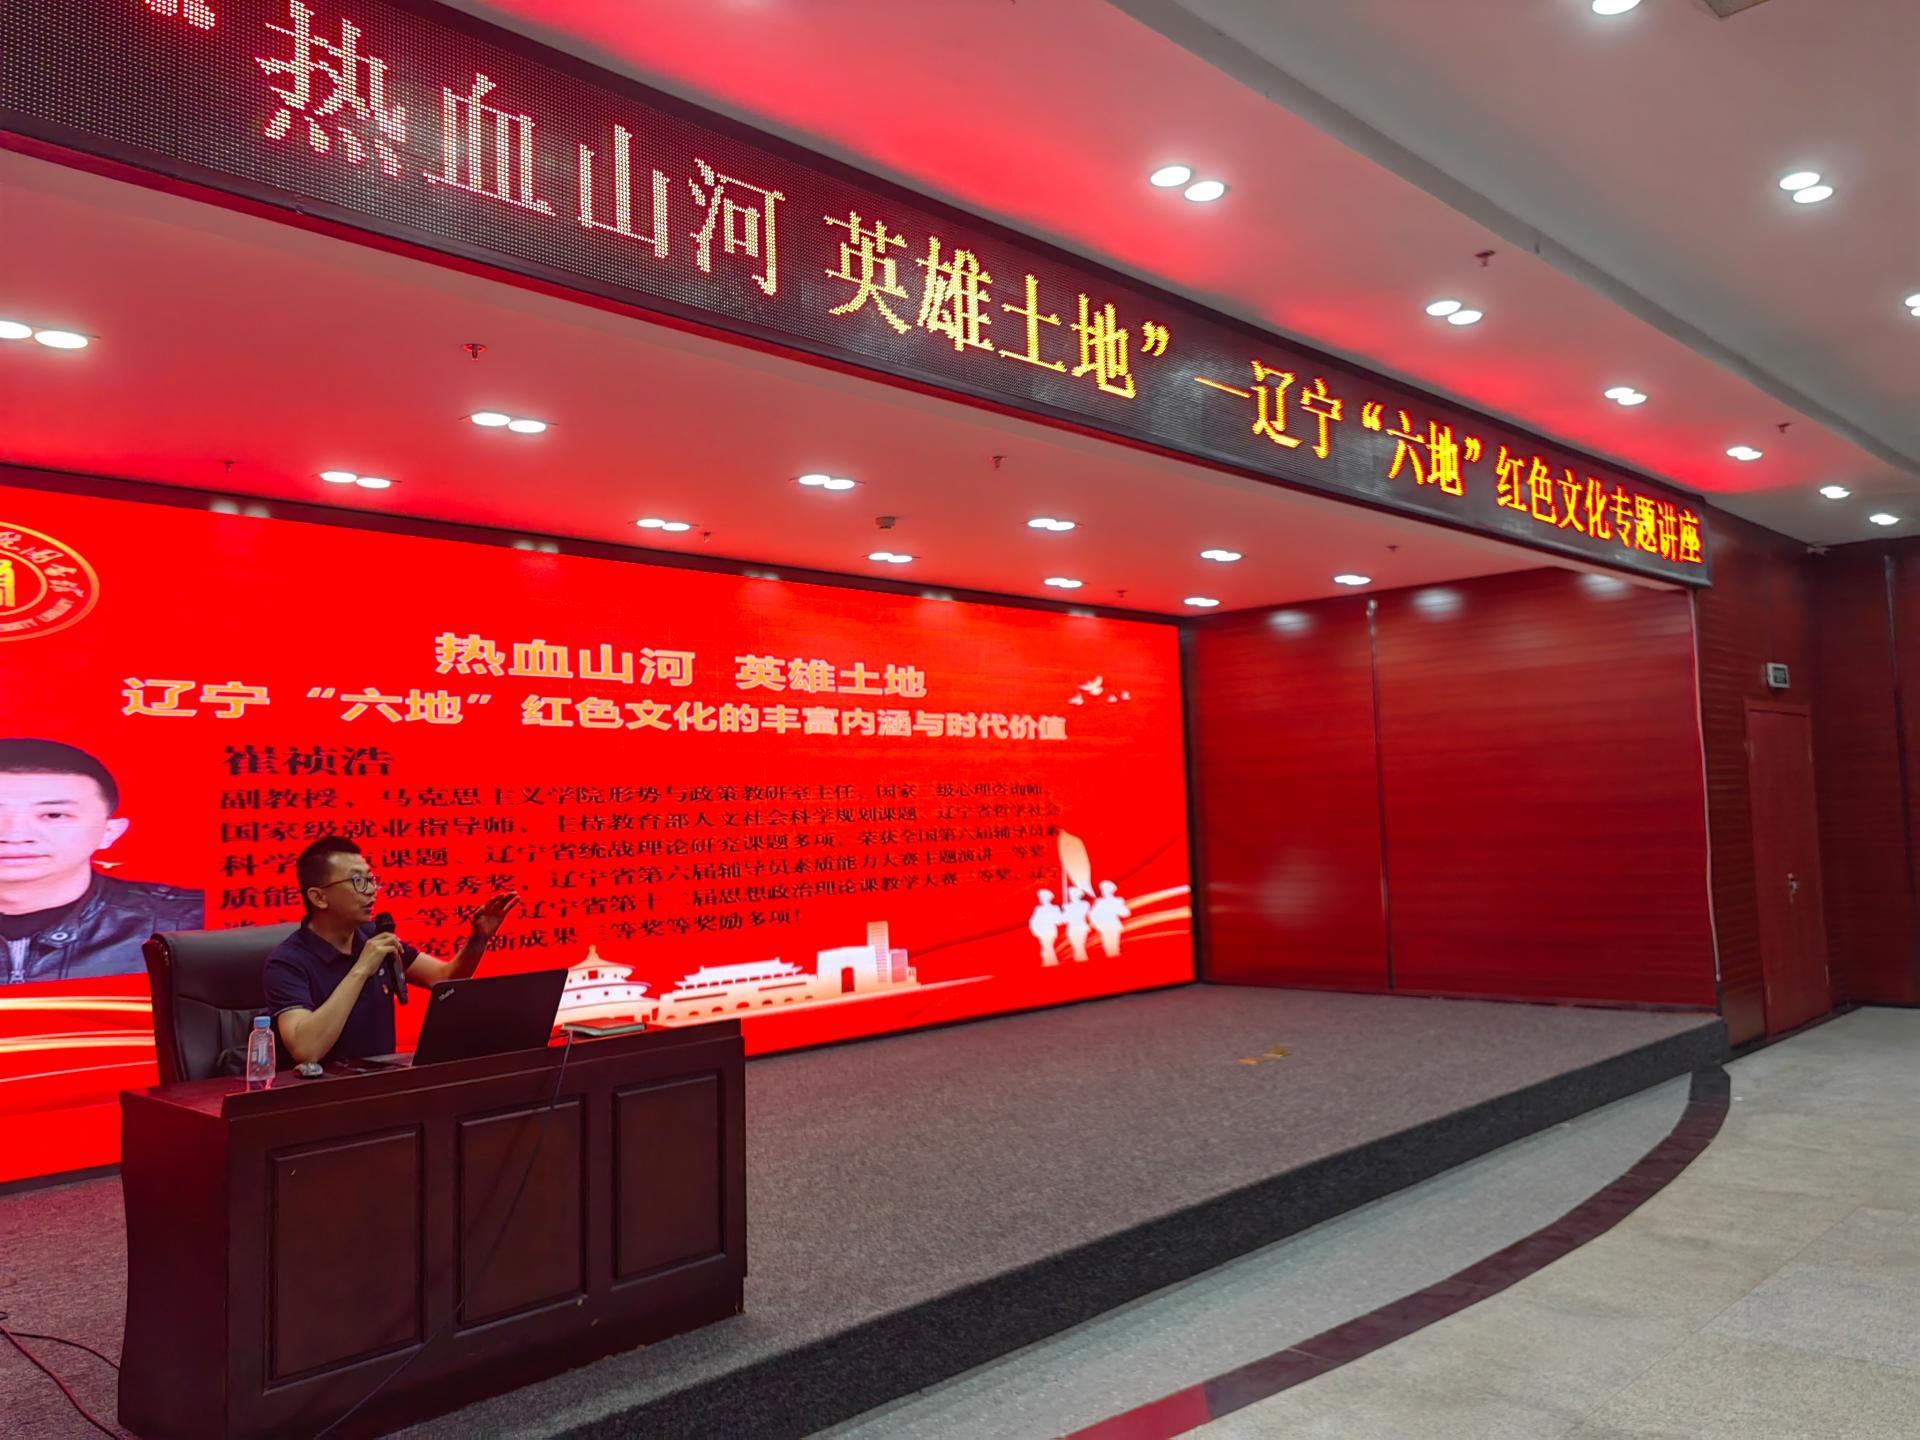 沈阳体育学院图书馆举办辽宁六地红色文化系列宣传活动